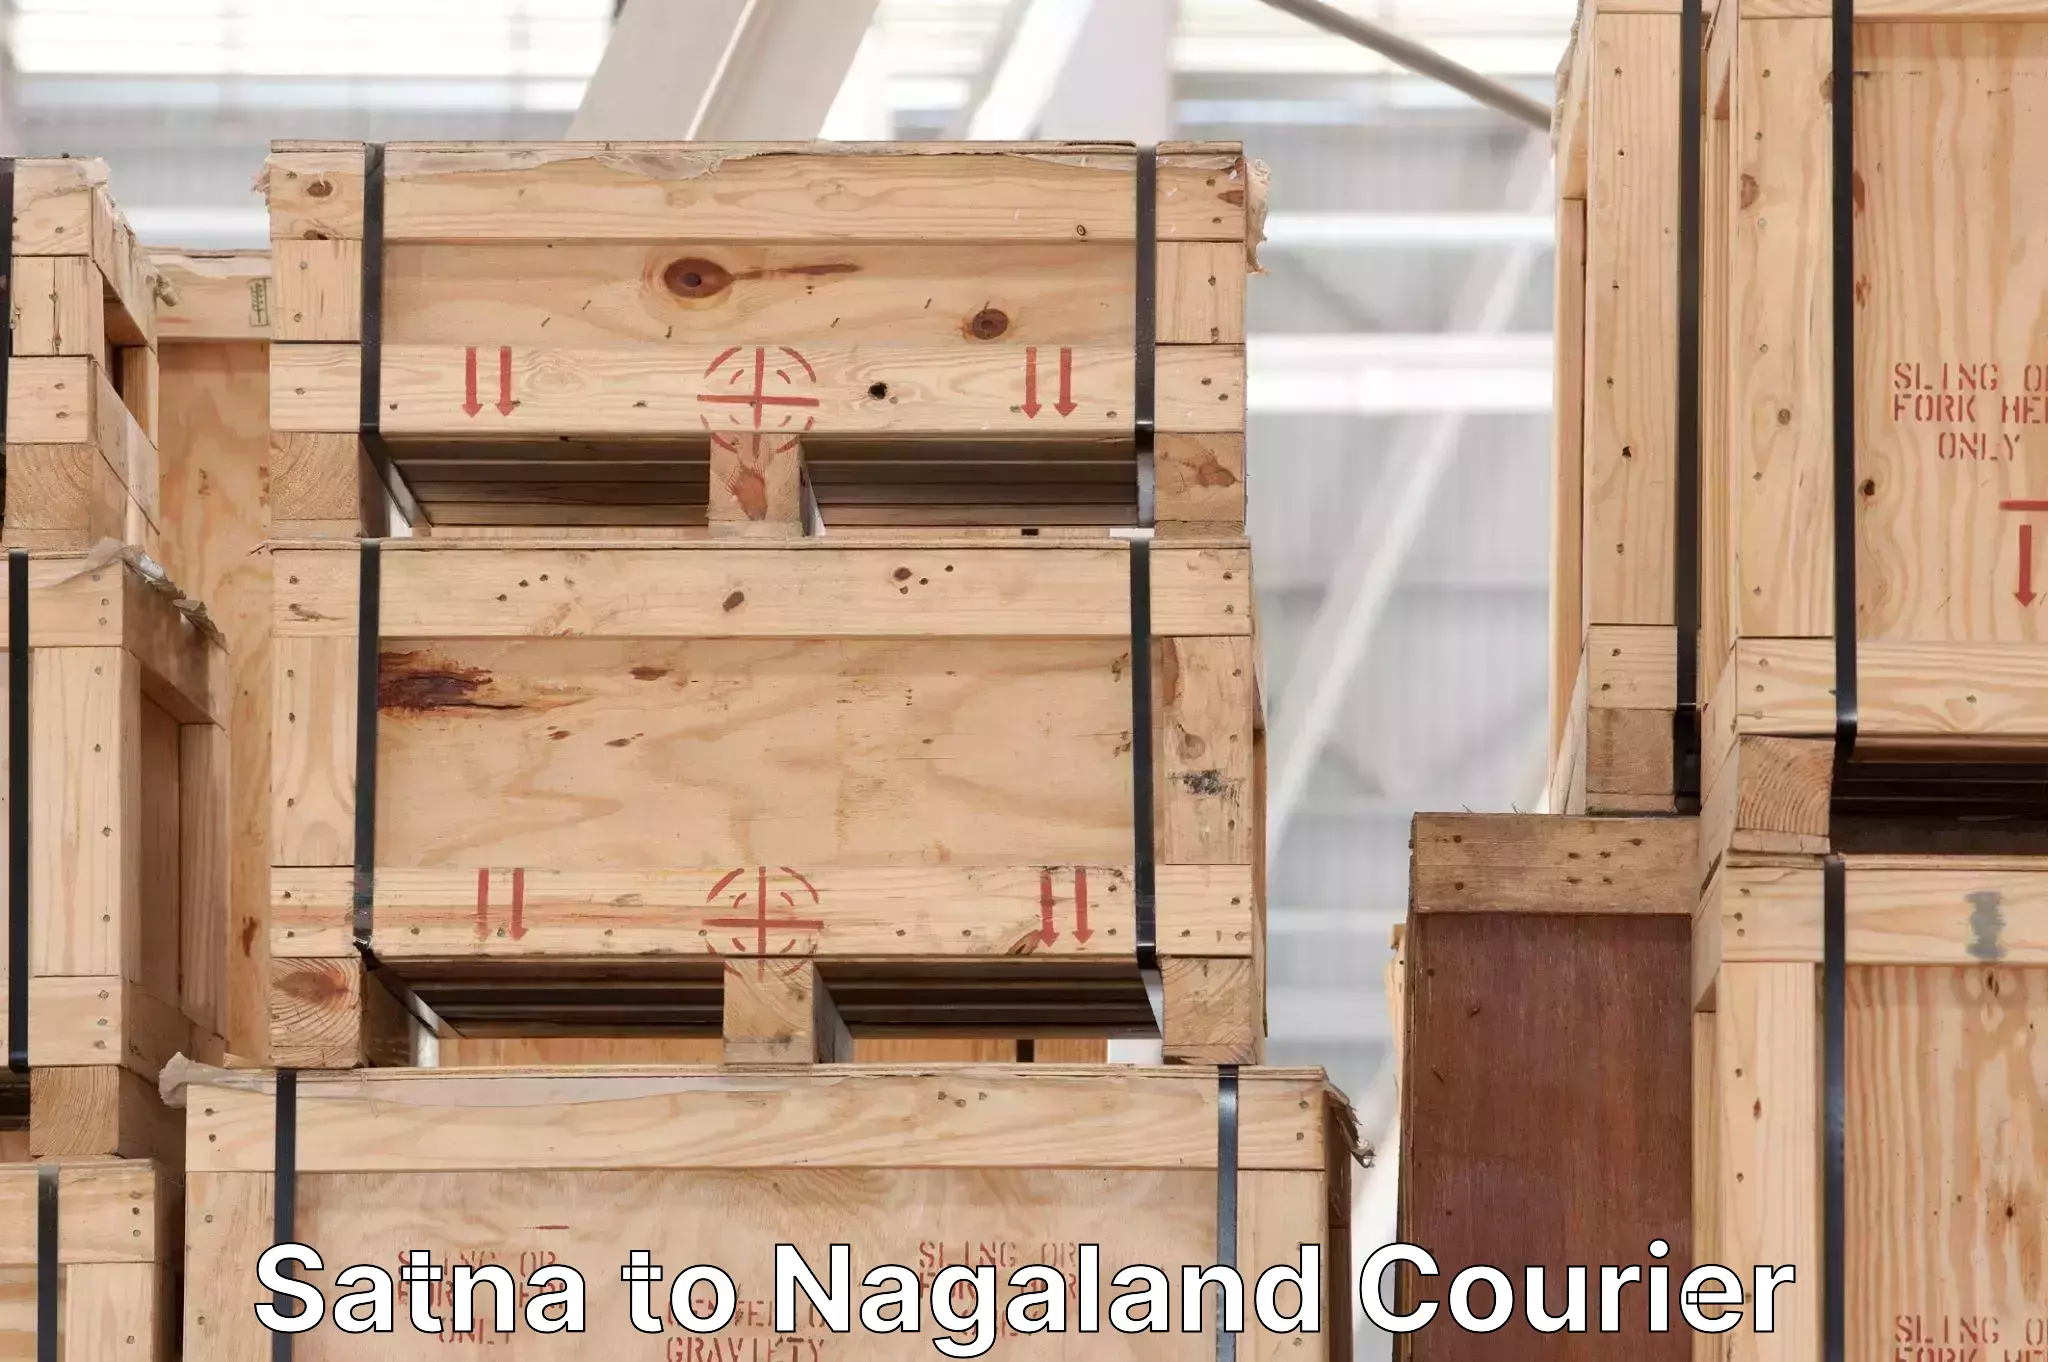 Luggage transport rates calculator Satna to Nagaland